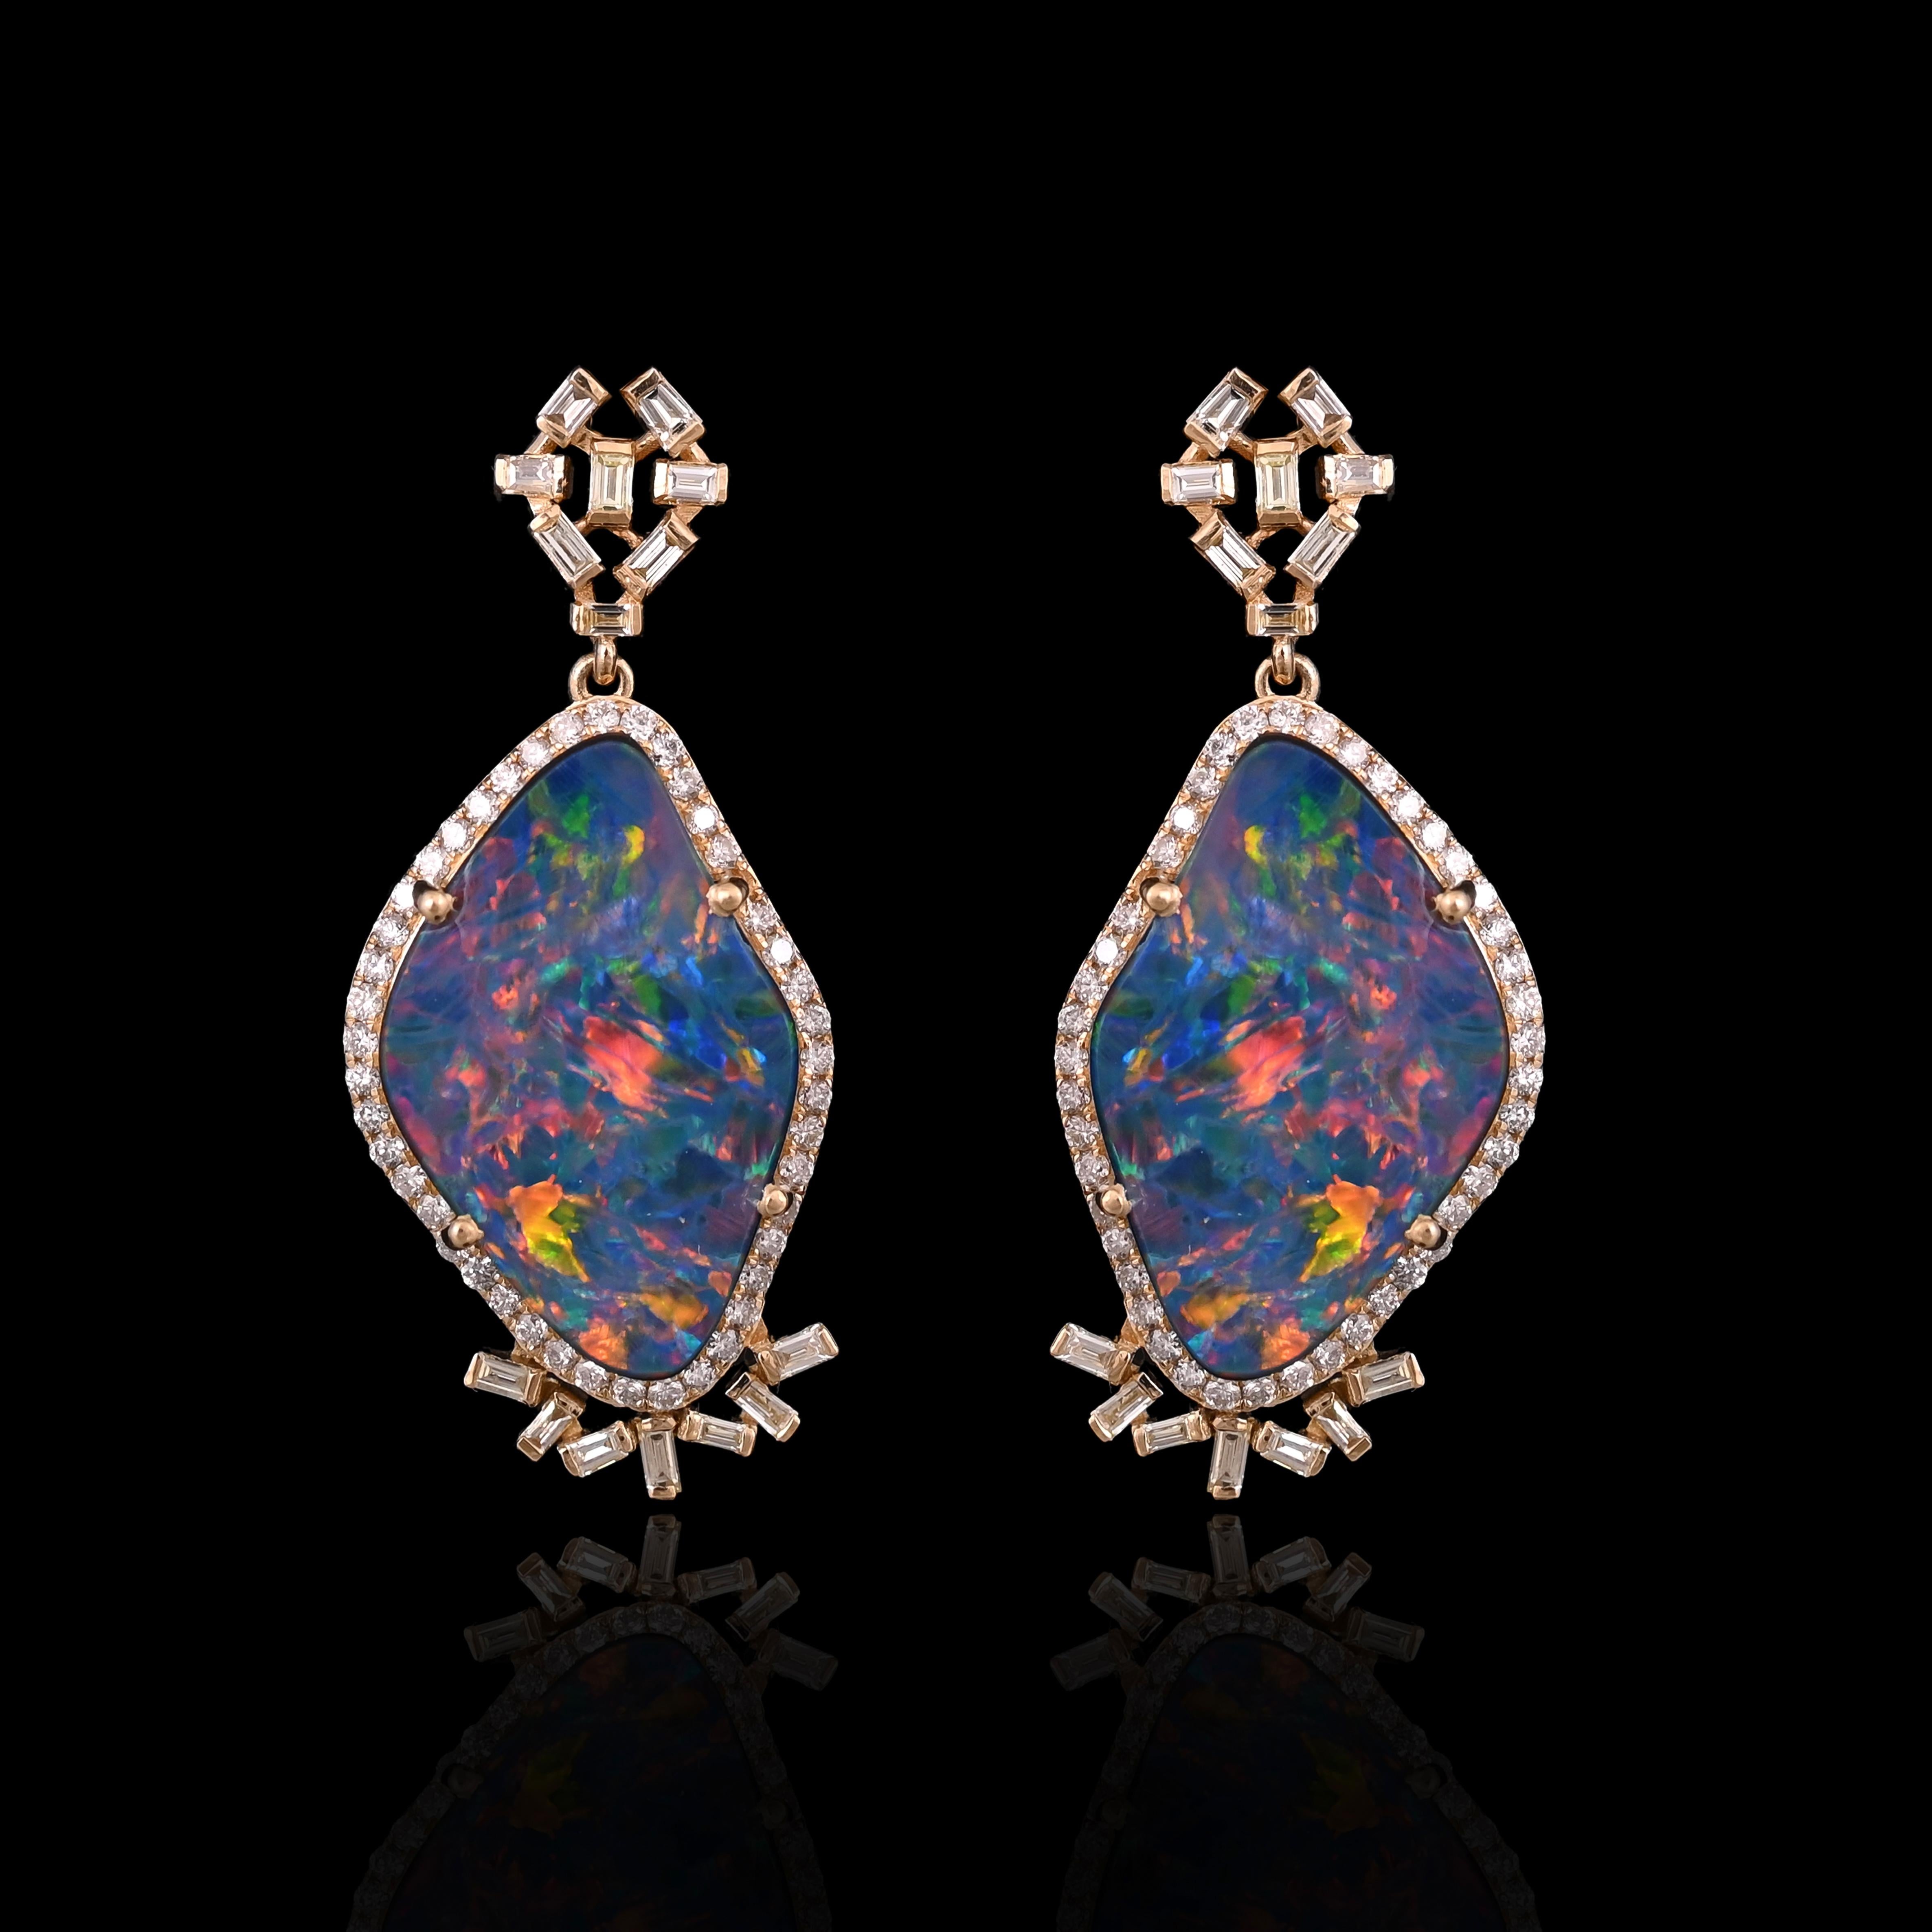 Eine sehr schöne und atemberaubende, Doublet Opal Chandelier Ohrringe in 18K Gelbgold & Diamanten gesetzt. Das Gewicht des Doublet Opal uns 10,64 Karat. Die Opale sind australische Opal-Doubletten und haben ein orange-gelbes Farbspiel. Das